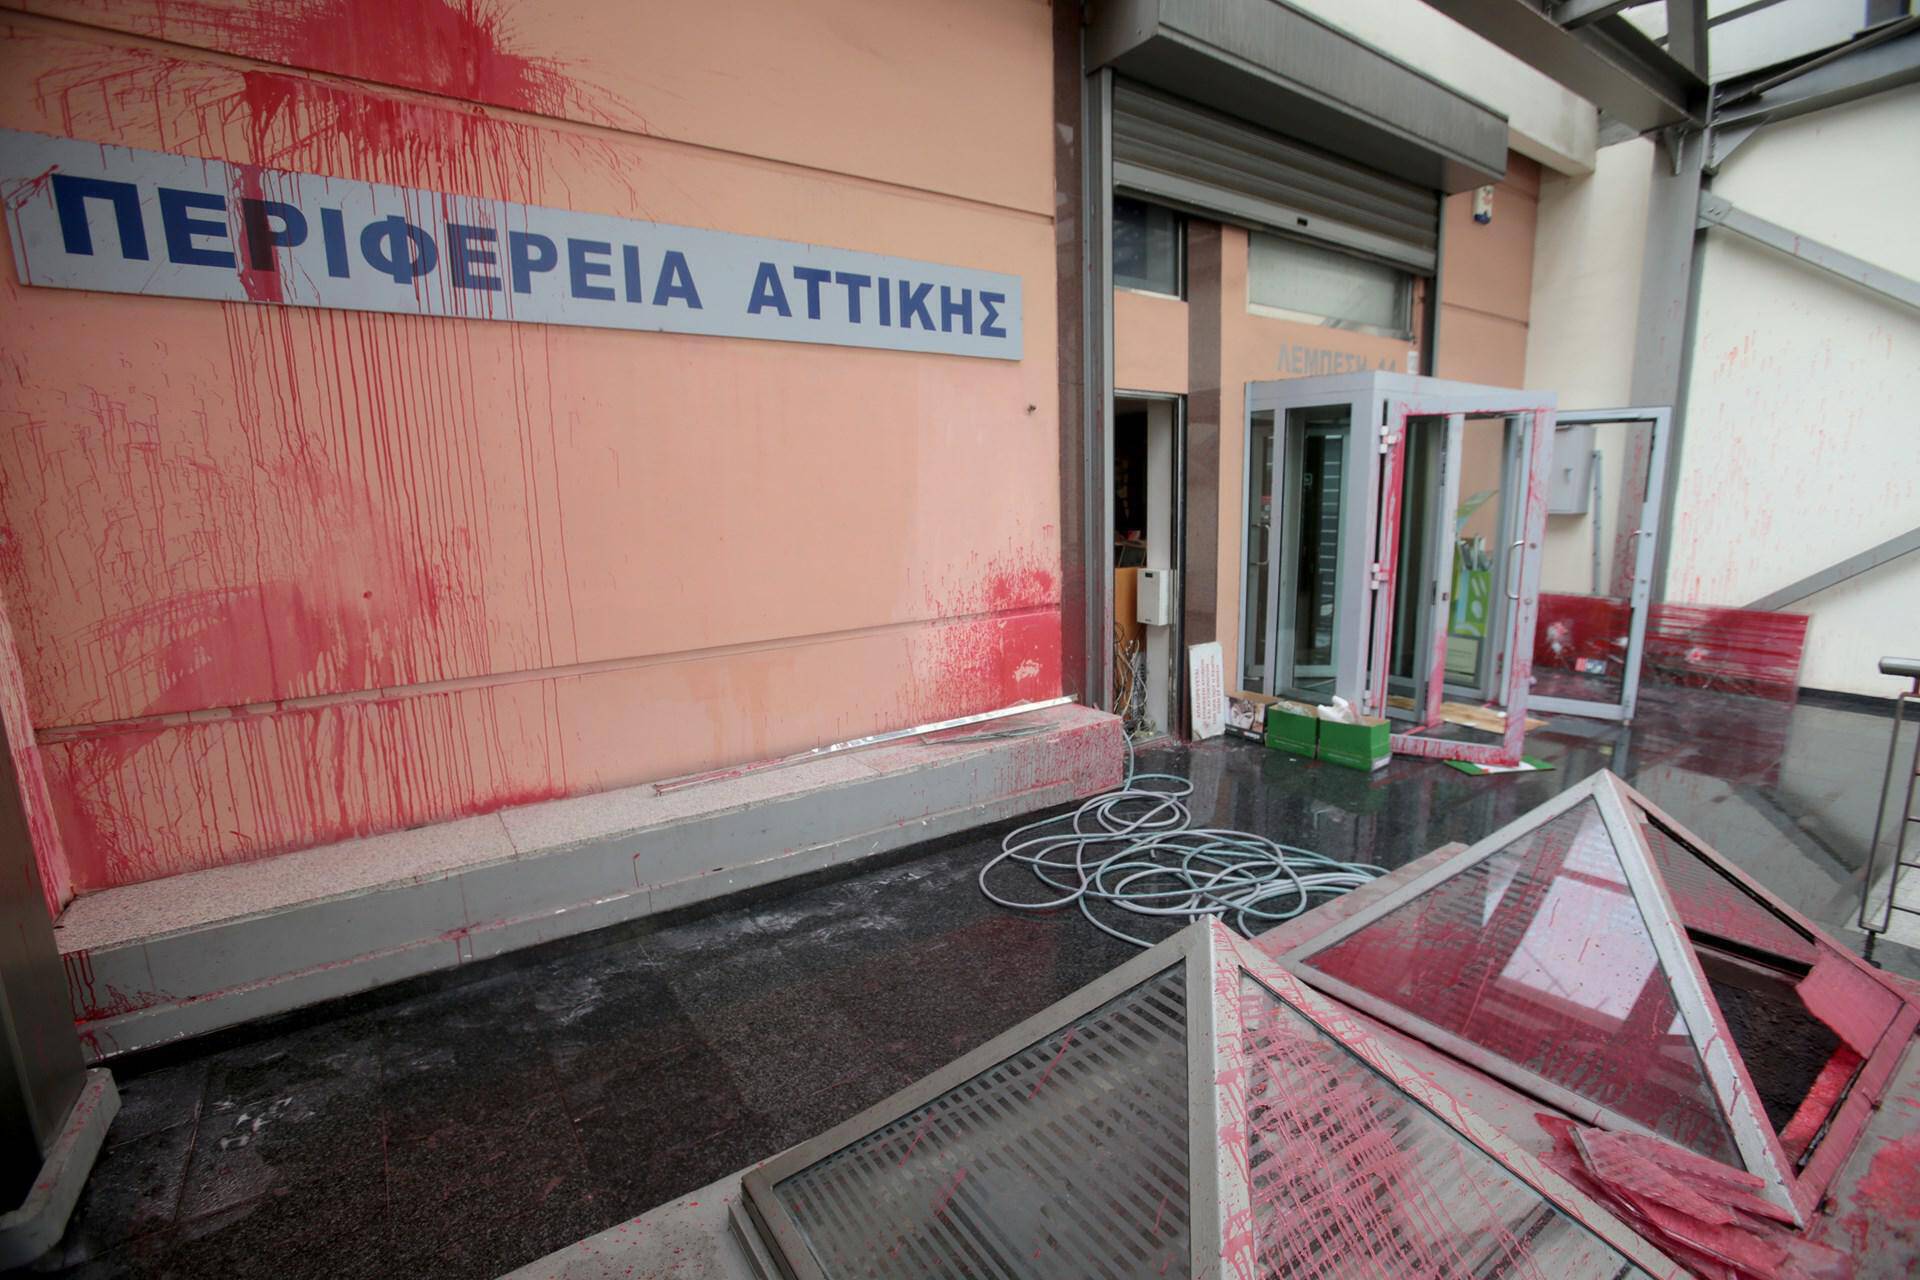 Επίθεση του Ρουβίκωνα στην Περιφέρεια Αττικής, με βαριοπούλες… (pic)